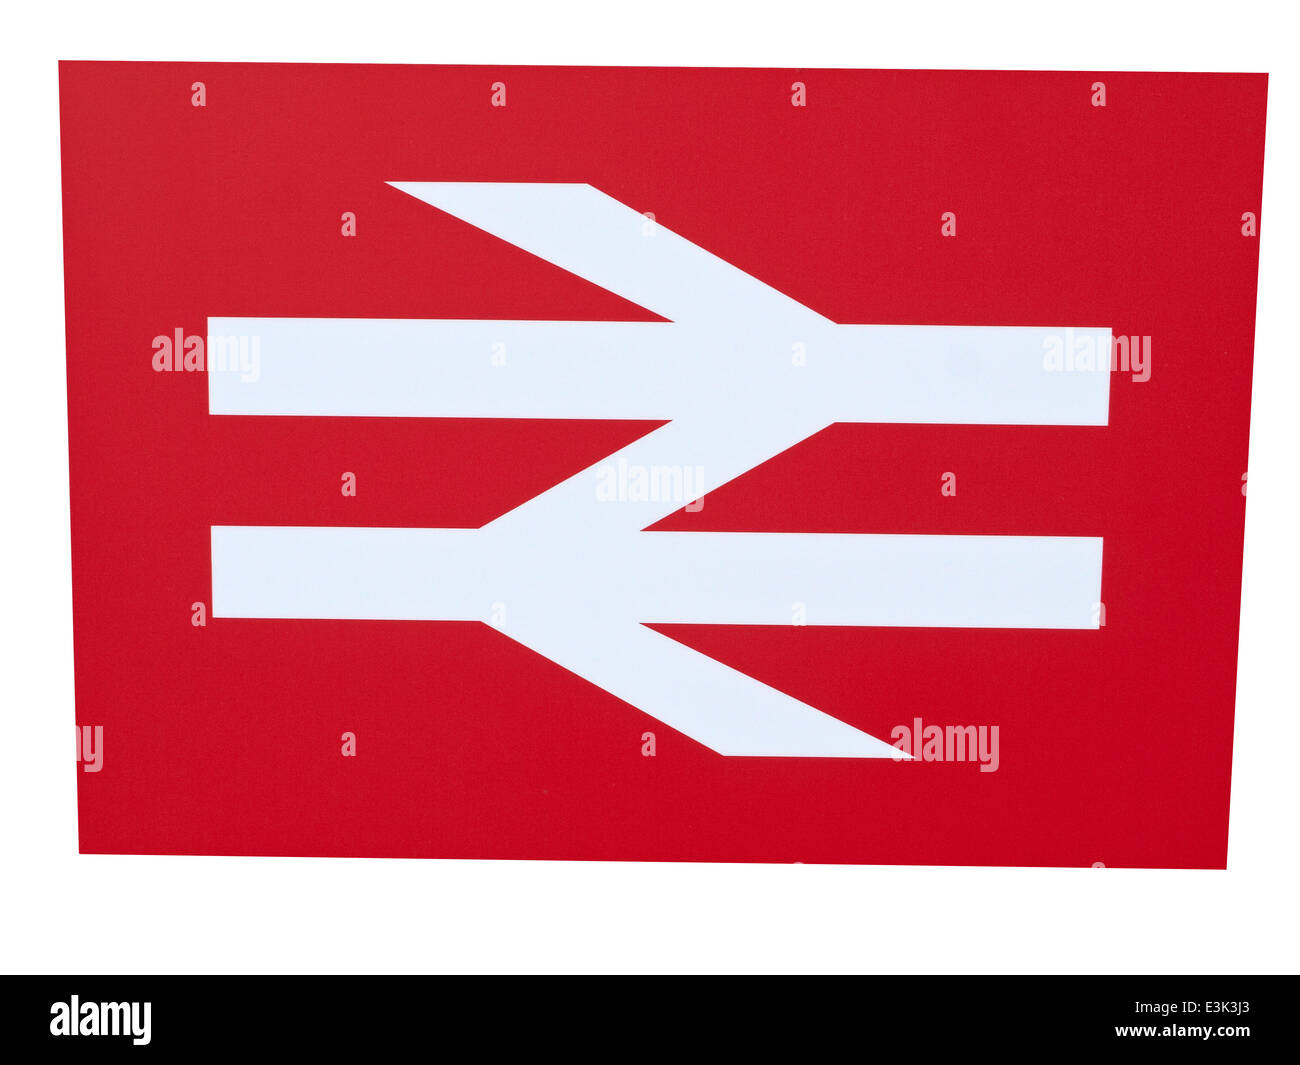 Logo British rail sign close up close-up libre de découper découpe cut-out Banque D'Images